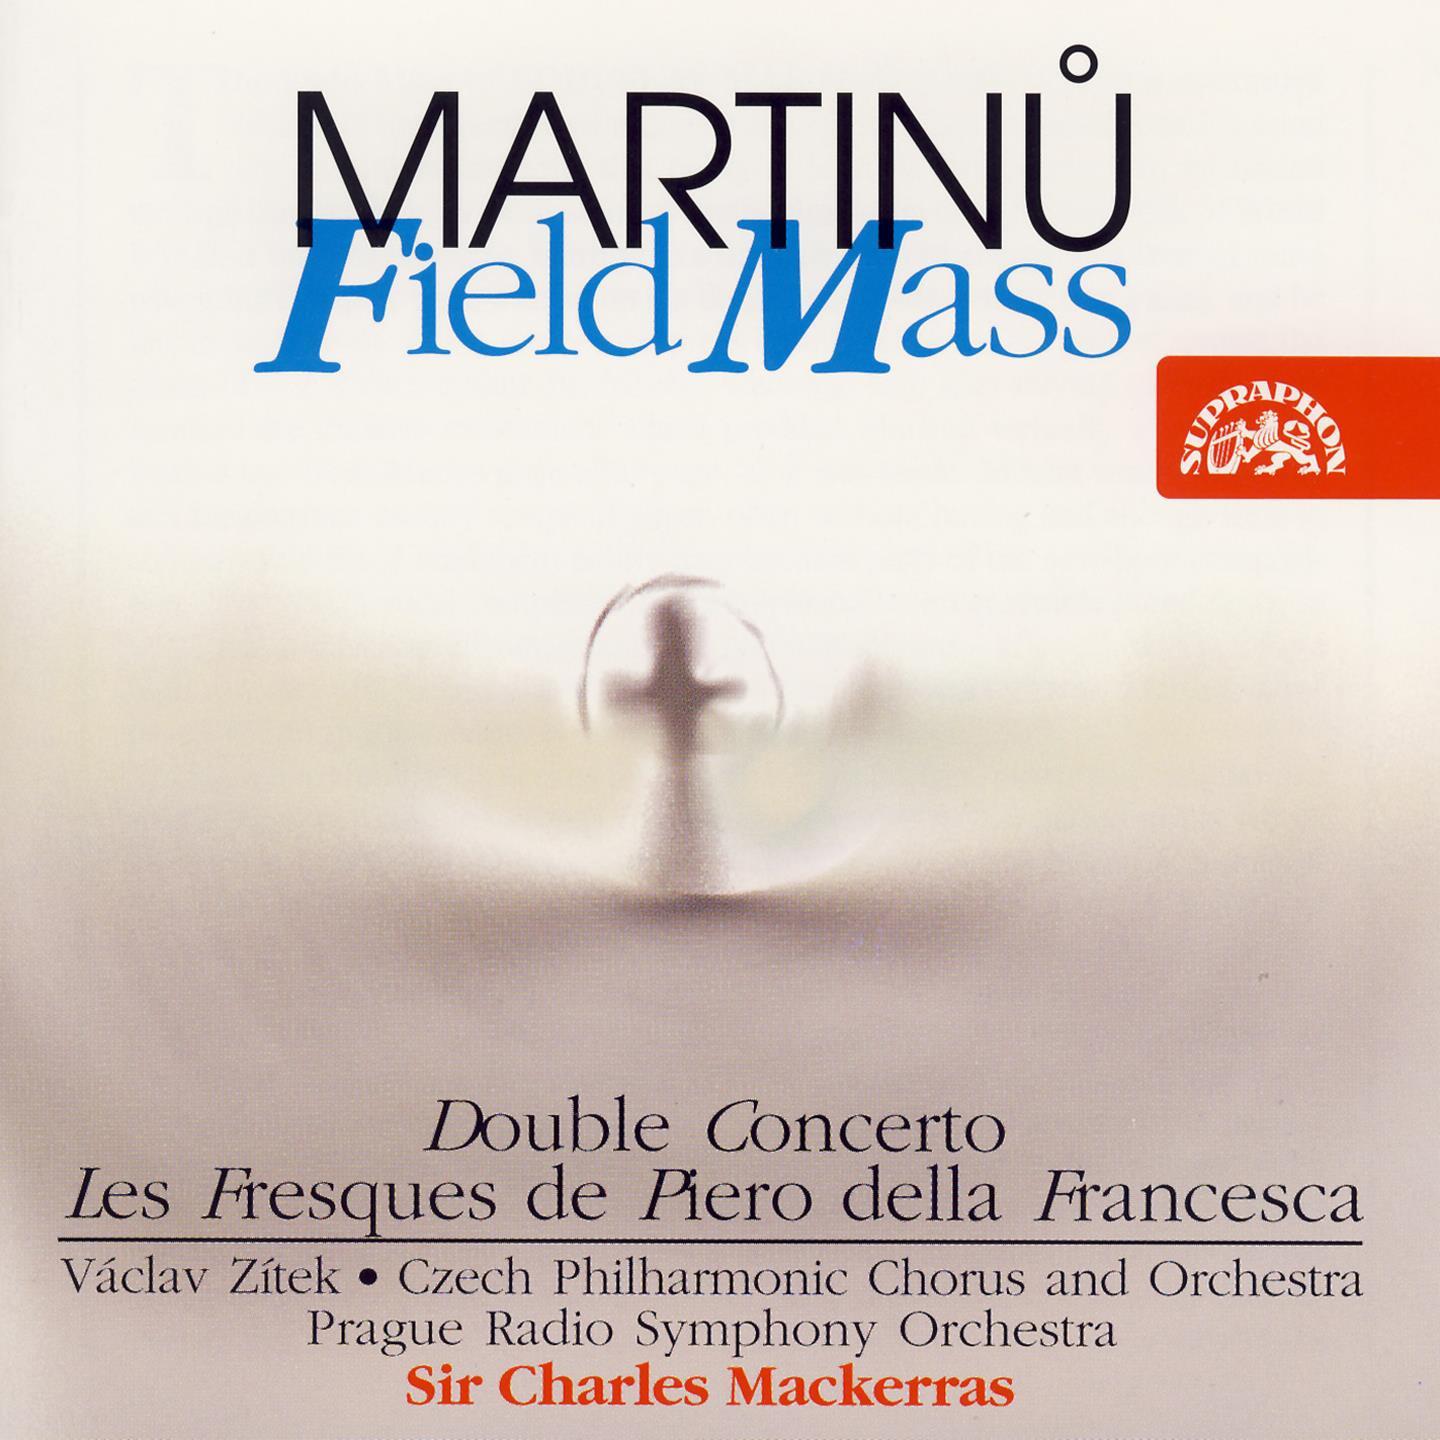 Martinu: Field Mass, Double Concerto, Les Fresques de Piero della Francesca